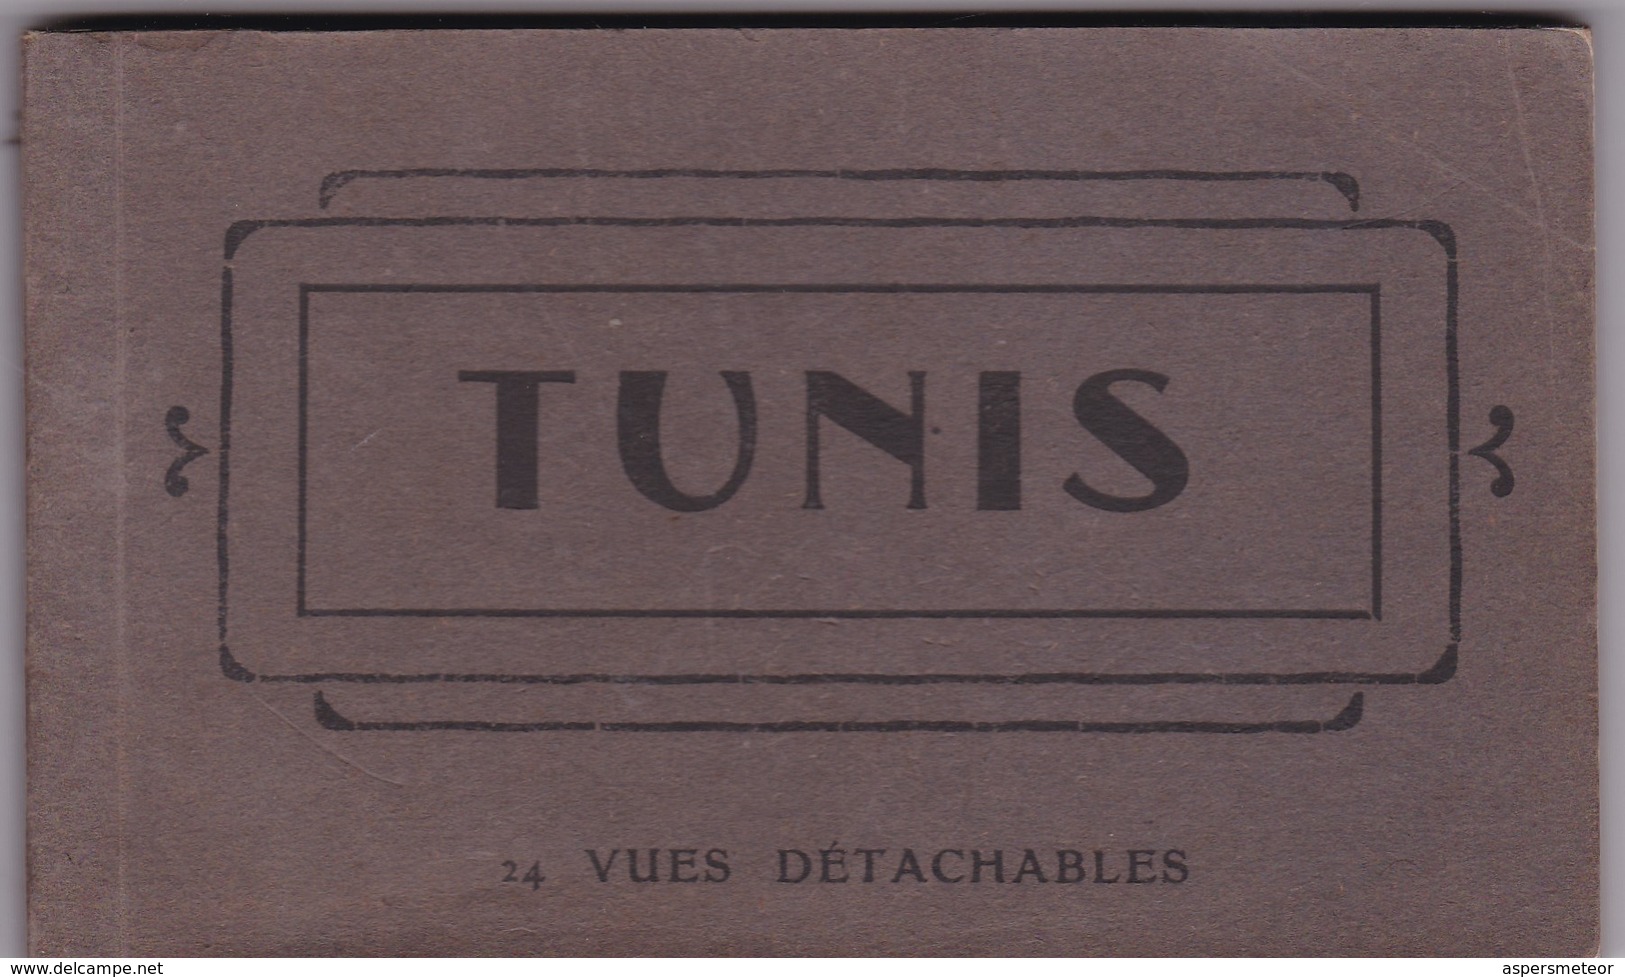 TUNIS, 24 VUES DETACHABLES. AM. PHOTOSET GRUSS AUS LEMBRANÇA SOUVENIR 1900s - BLEUP - Tunesien